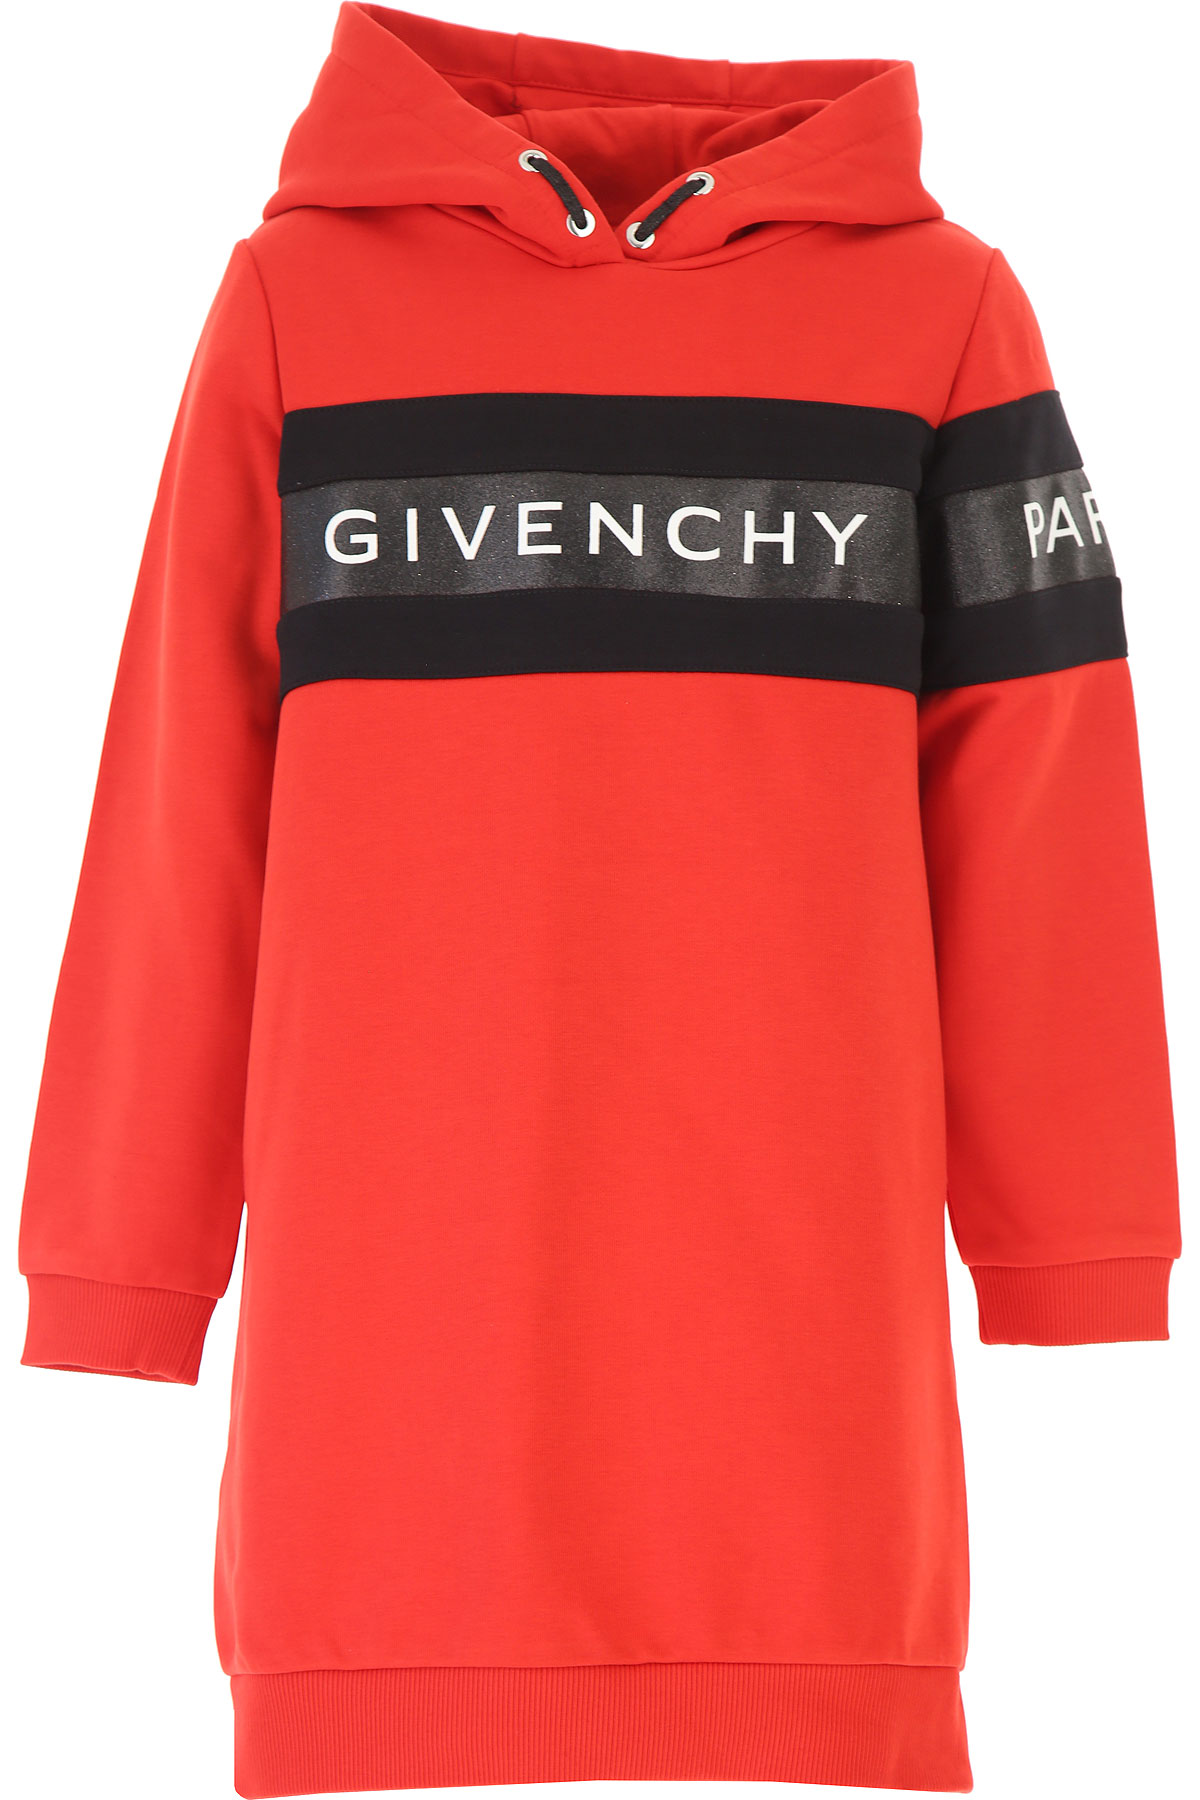 Givenchy Kleid für Mädchen Günstig im Sale, Rot, Baumwolle, 2017, 10Y 12Y 14Y 4Y 5Y 6Y 8Y